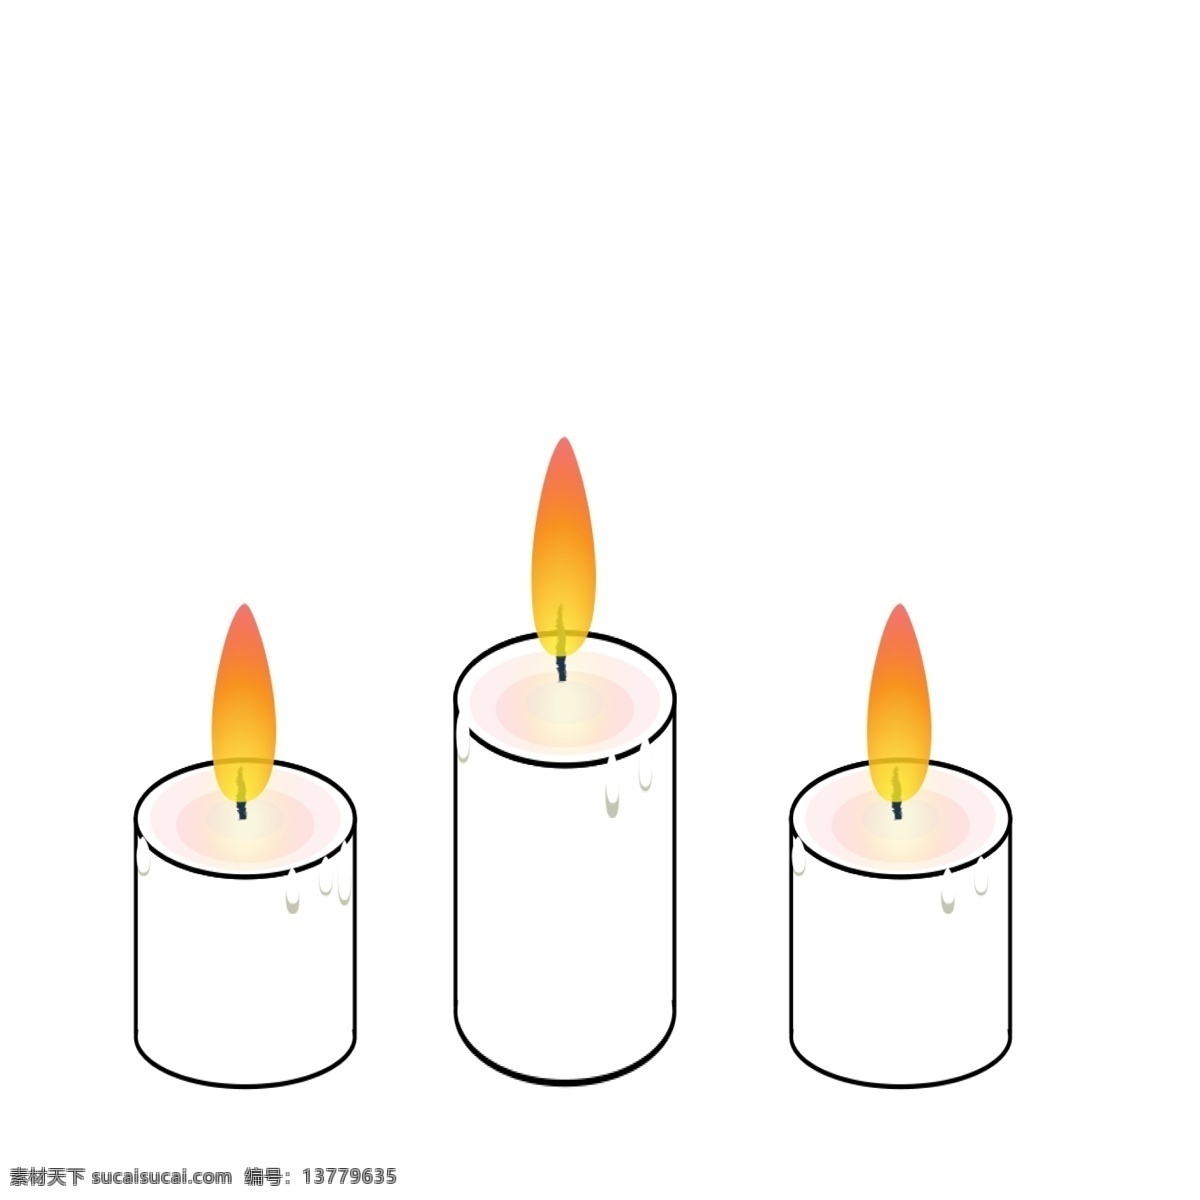 节日 祈祷 蜡烛 元素 可商用 矢量